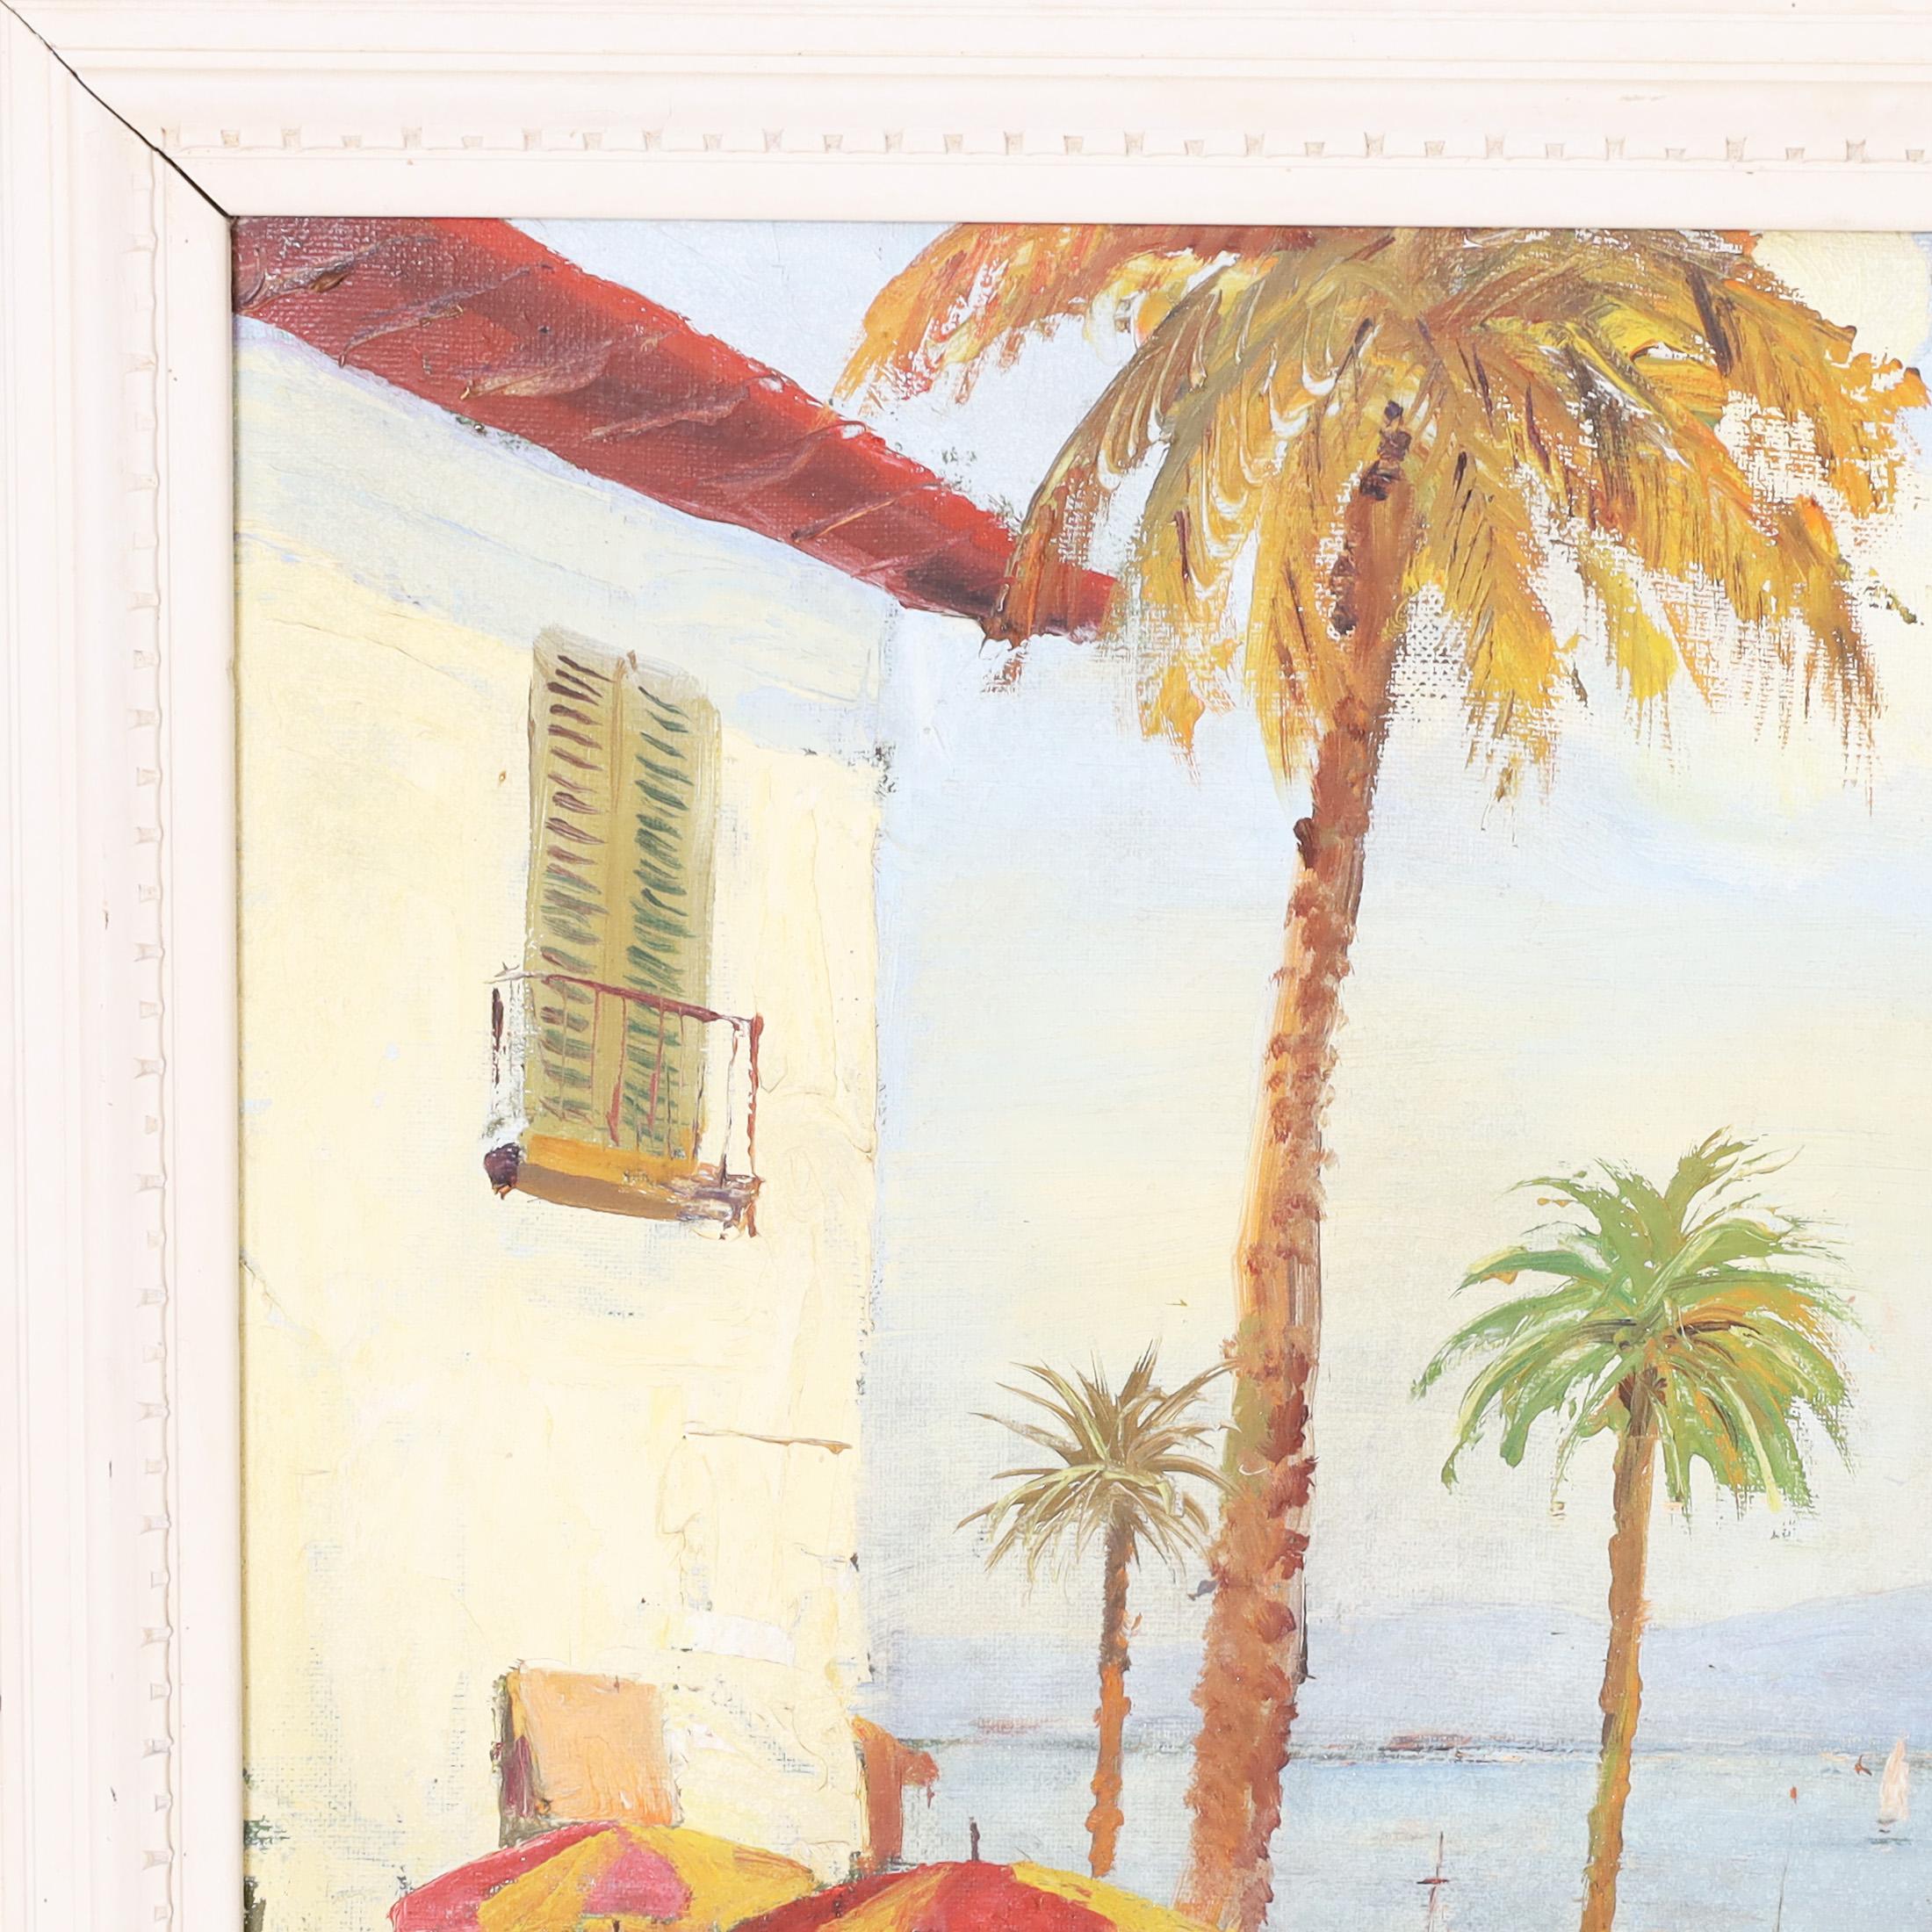 Bezauberndes Ölgemälde auf Leinwand, das Figuren in einer tropischen Umgebung mit Blumen darstellt, im impressionistischen Stil ausgeführt, signiert M Ford und in einem bemalten Holzrahmen präsentiert.